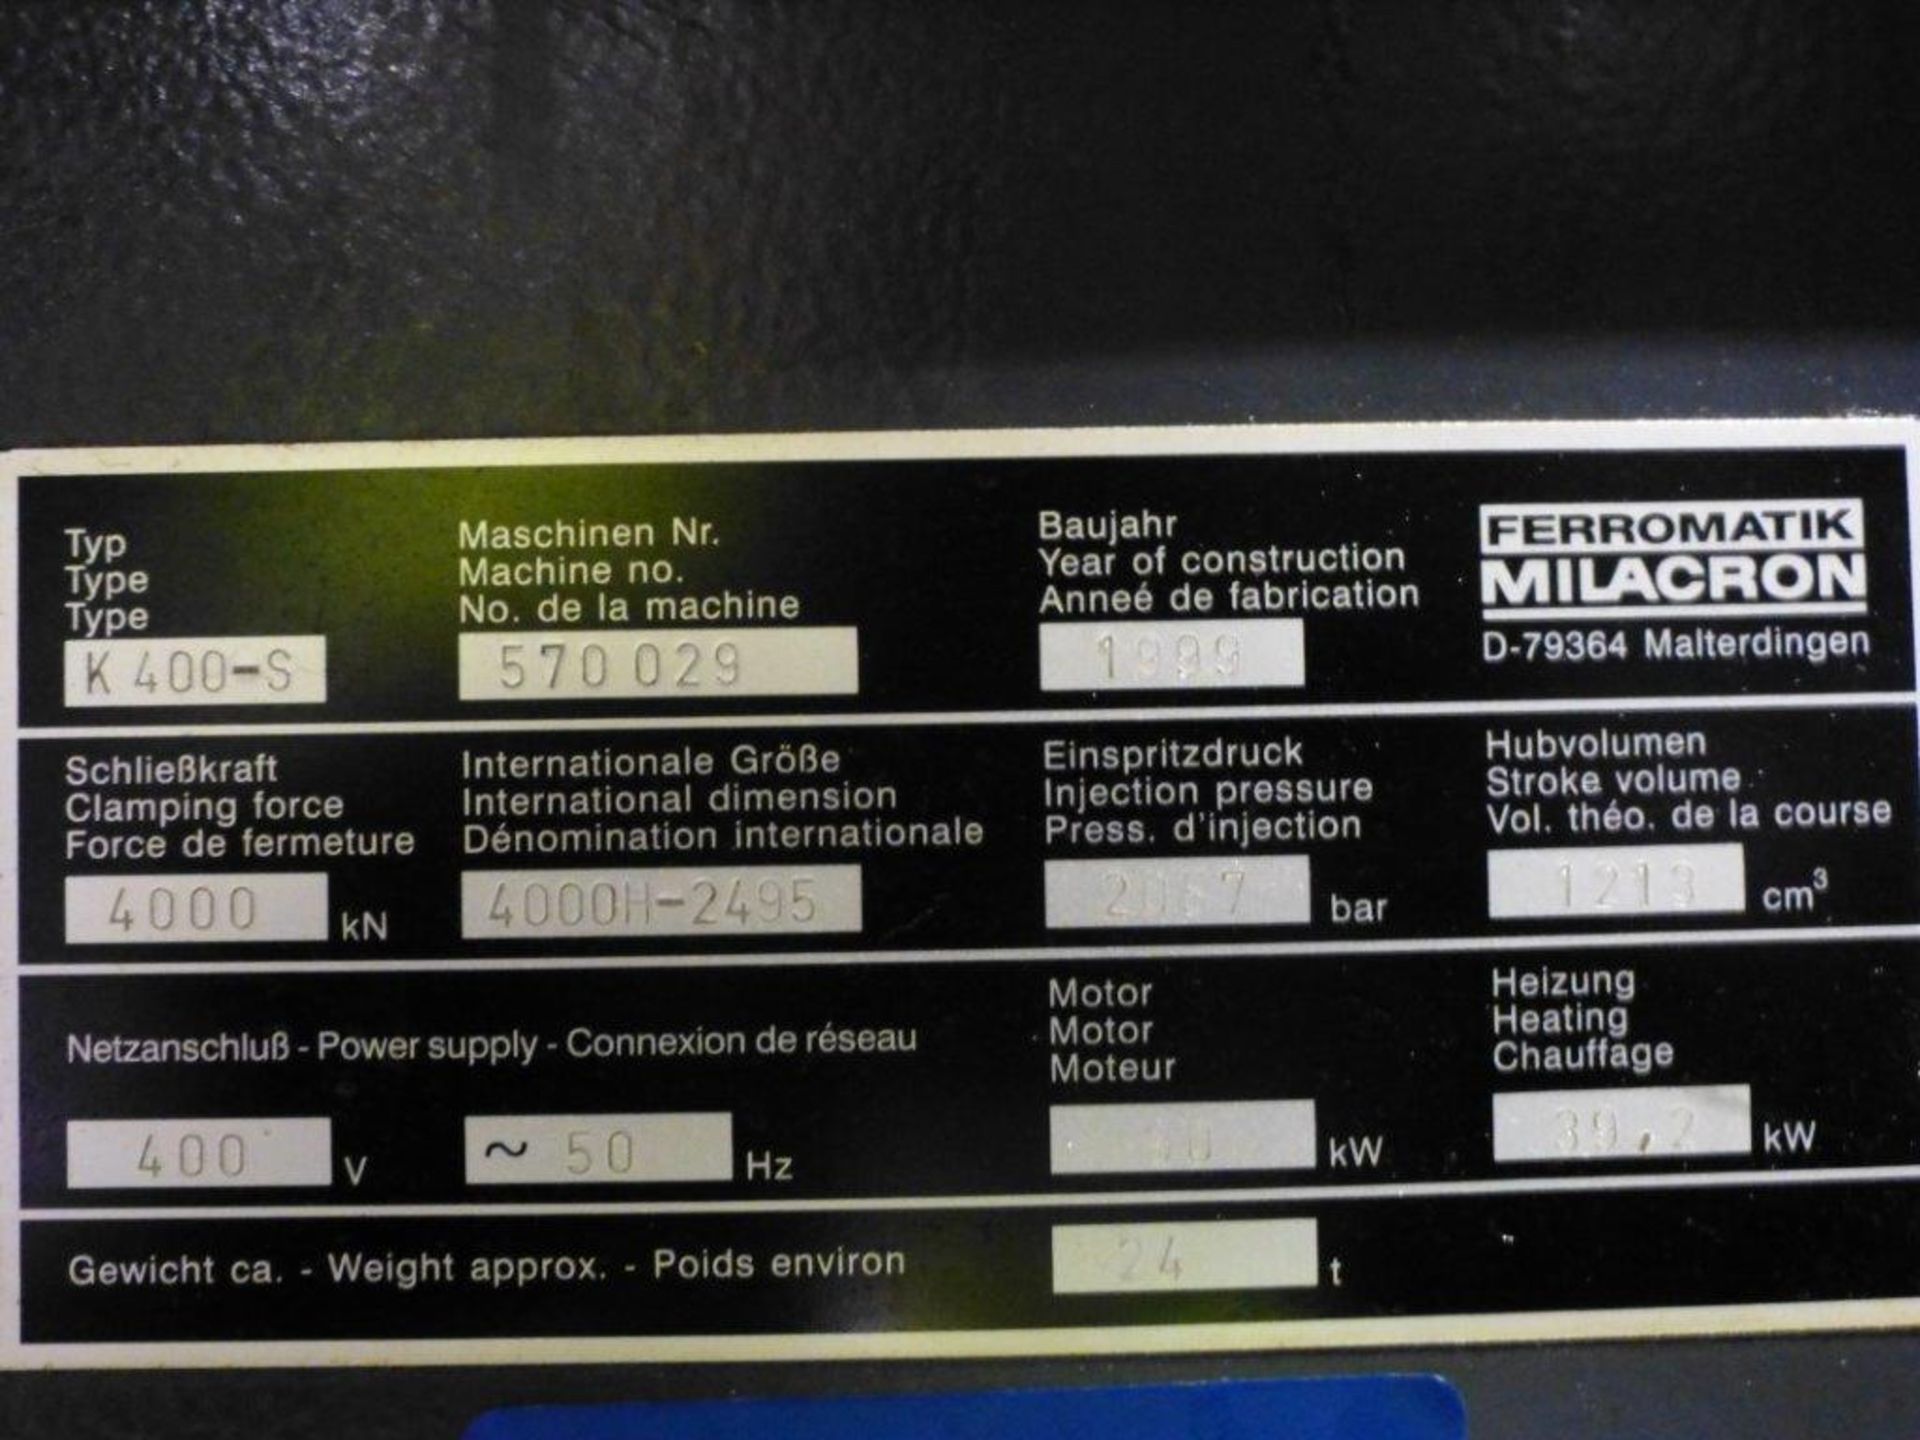 Ferromatik Milacron K400-S CNC plastic injection Moulding Machine Serial No. 570029 with 4000kN - Bild 5 aus 5